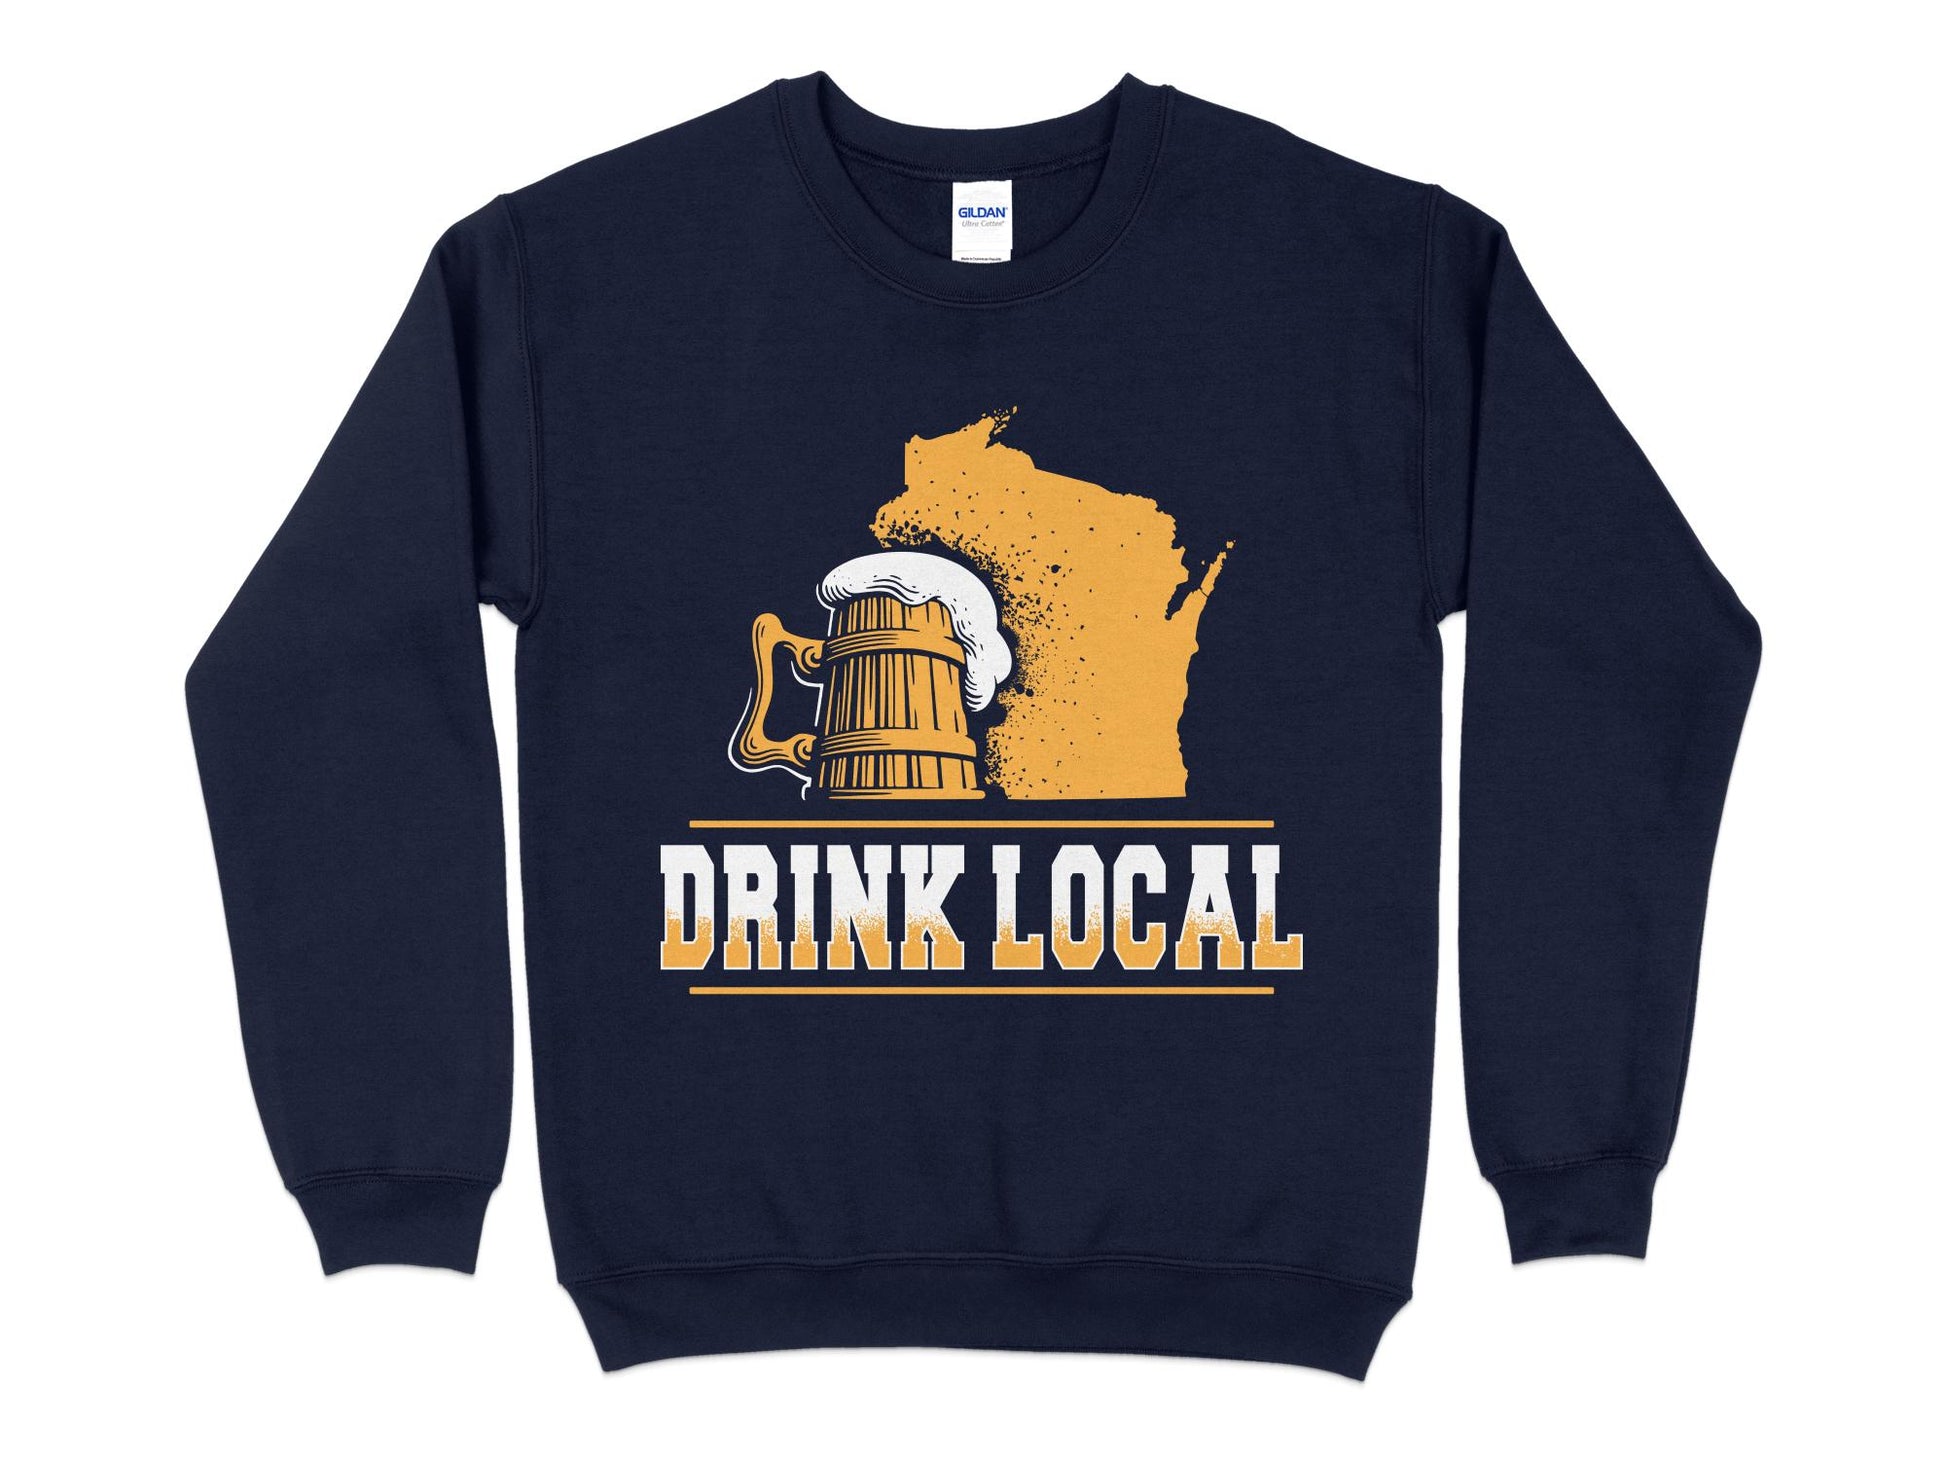 Wisconsin Sweatshirt - Drink Local navy blue